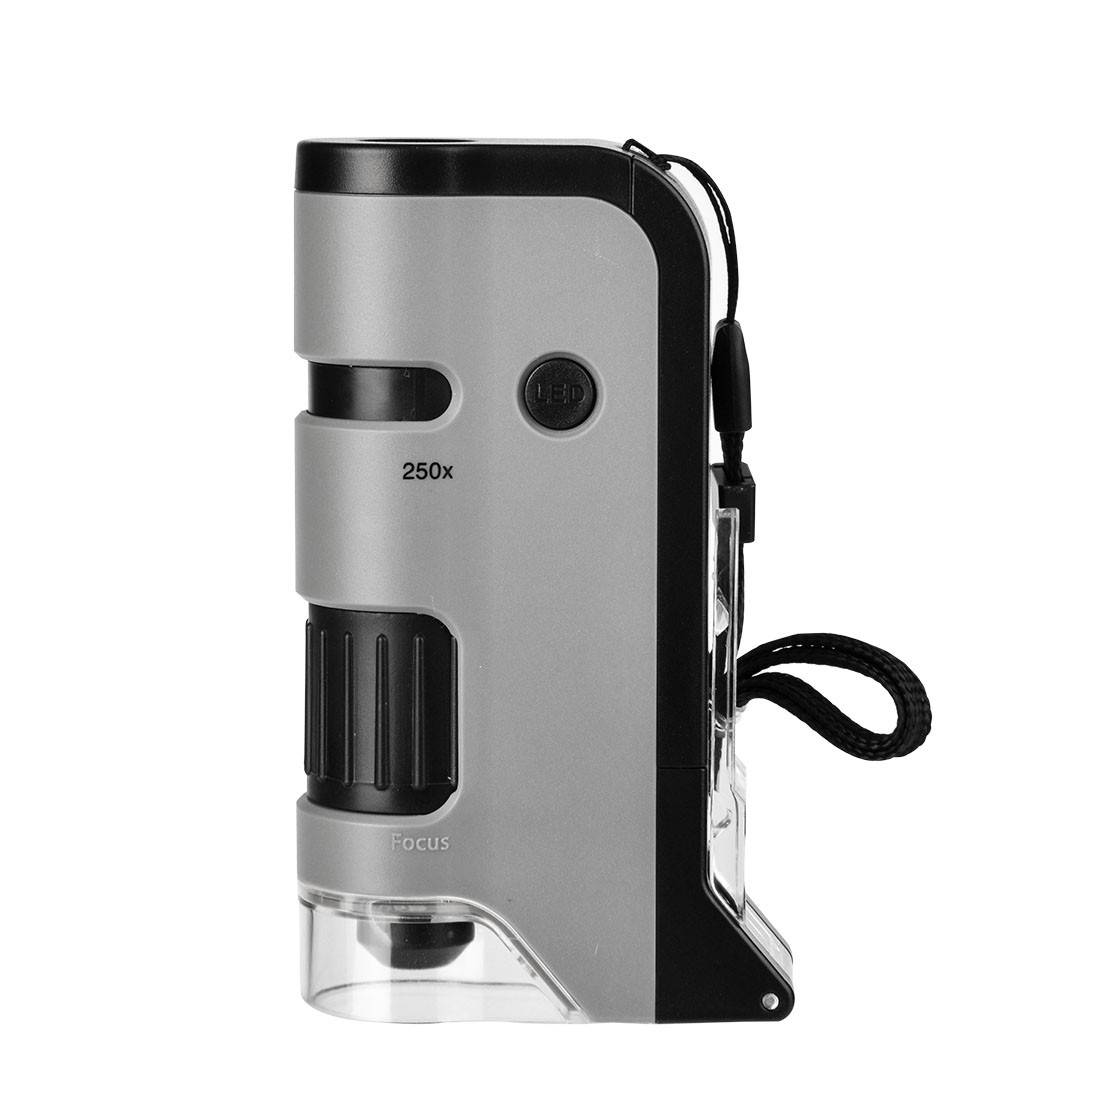 Microscope de poche avec base rabattable et clip pour smartphone  grossissement 100 - 250x